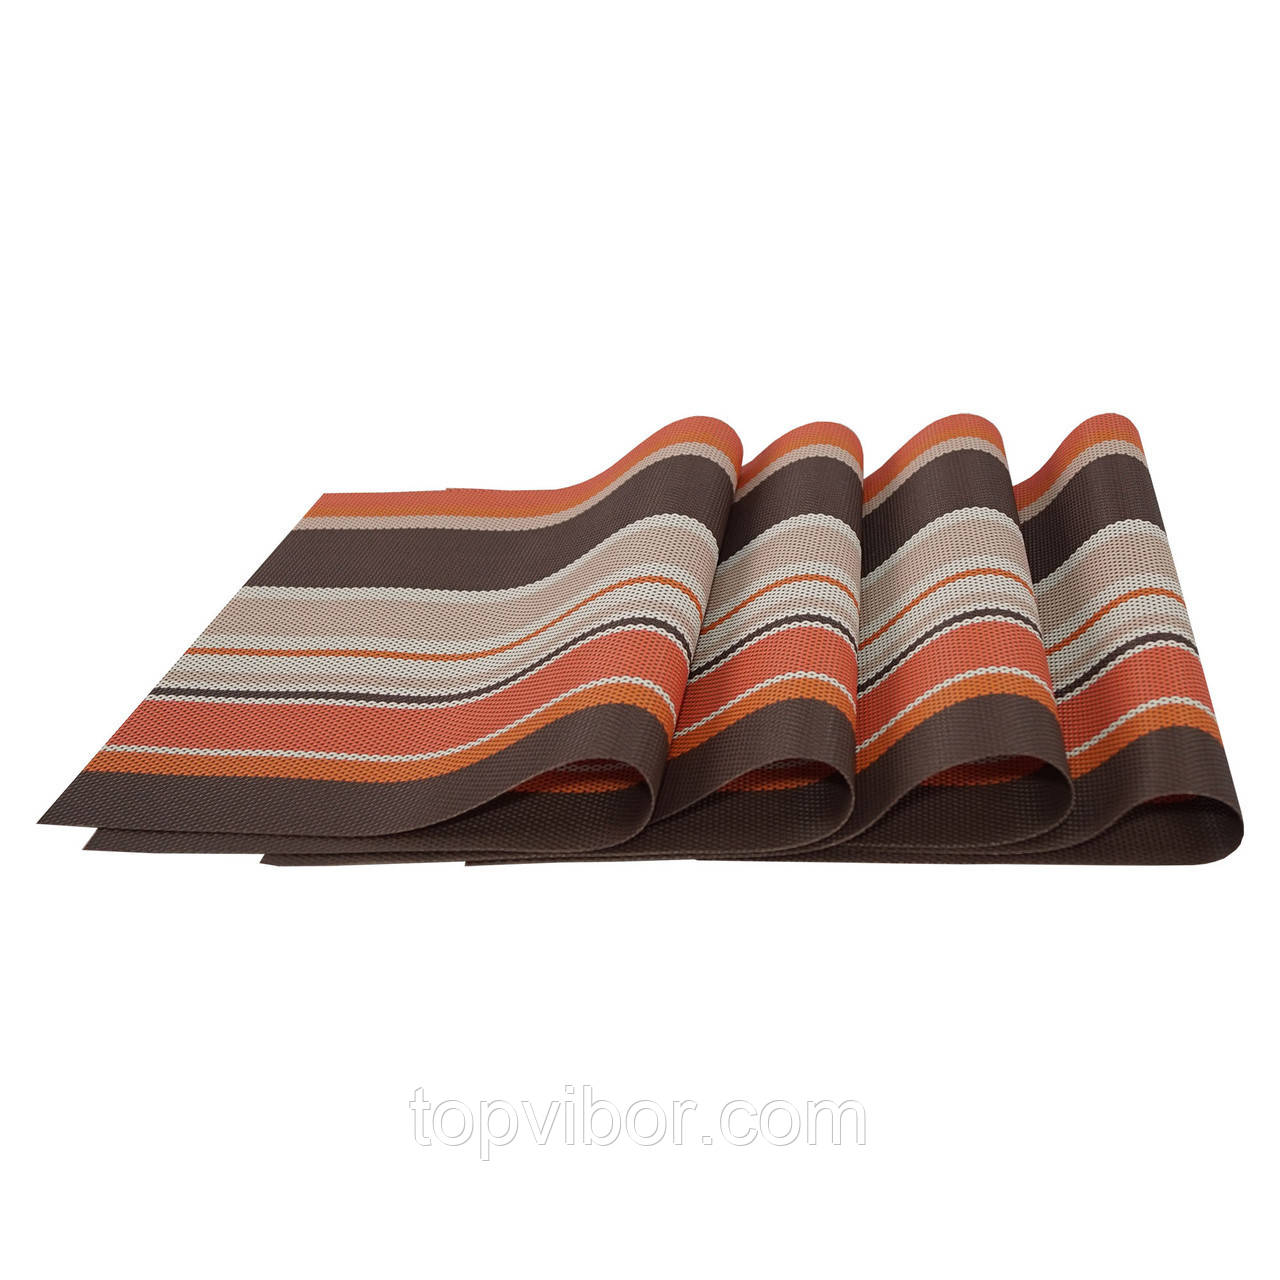 Сервірувальні килимки, декоративні, на стіл, 4 шт. в наборі, колір - коричнево-оранжевий